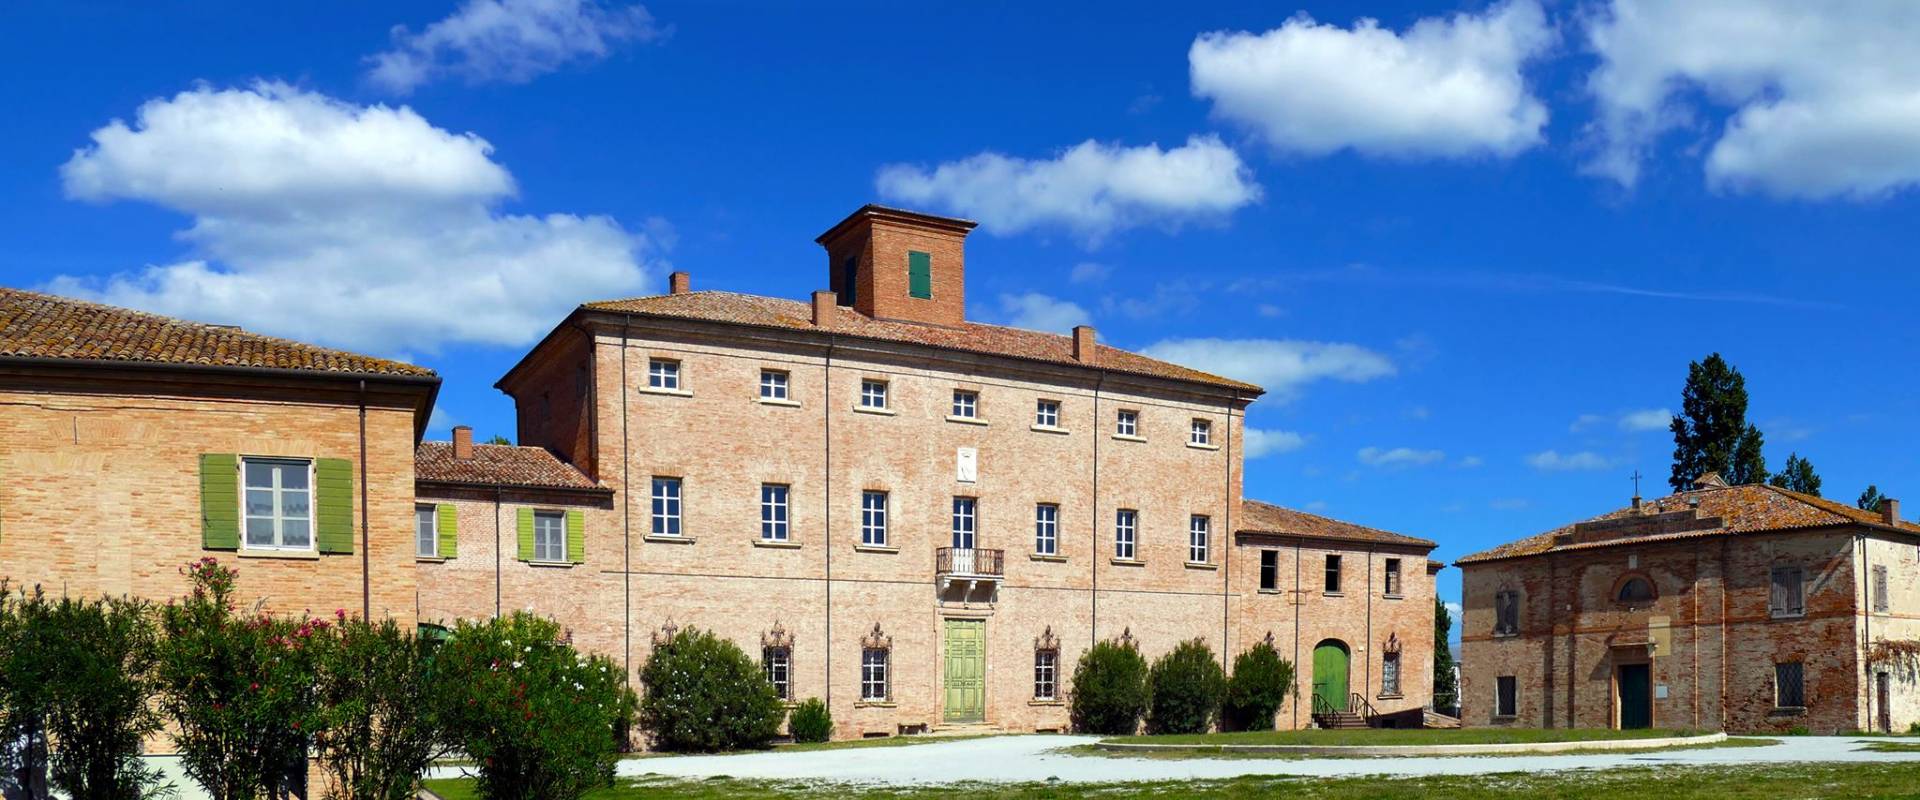 Villa Torlonia foto di Archivio San Mauro Pascoli